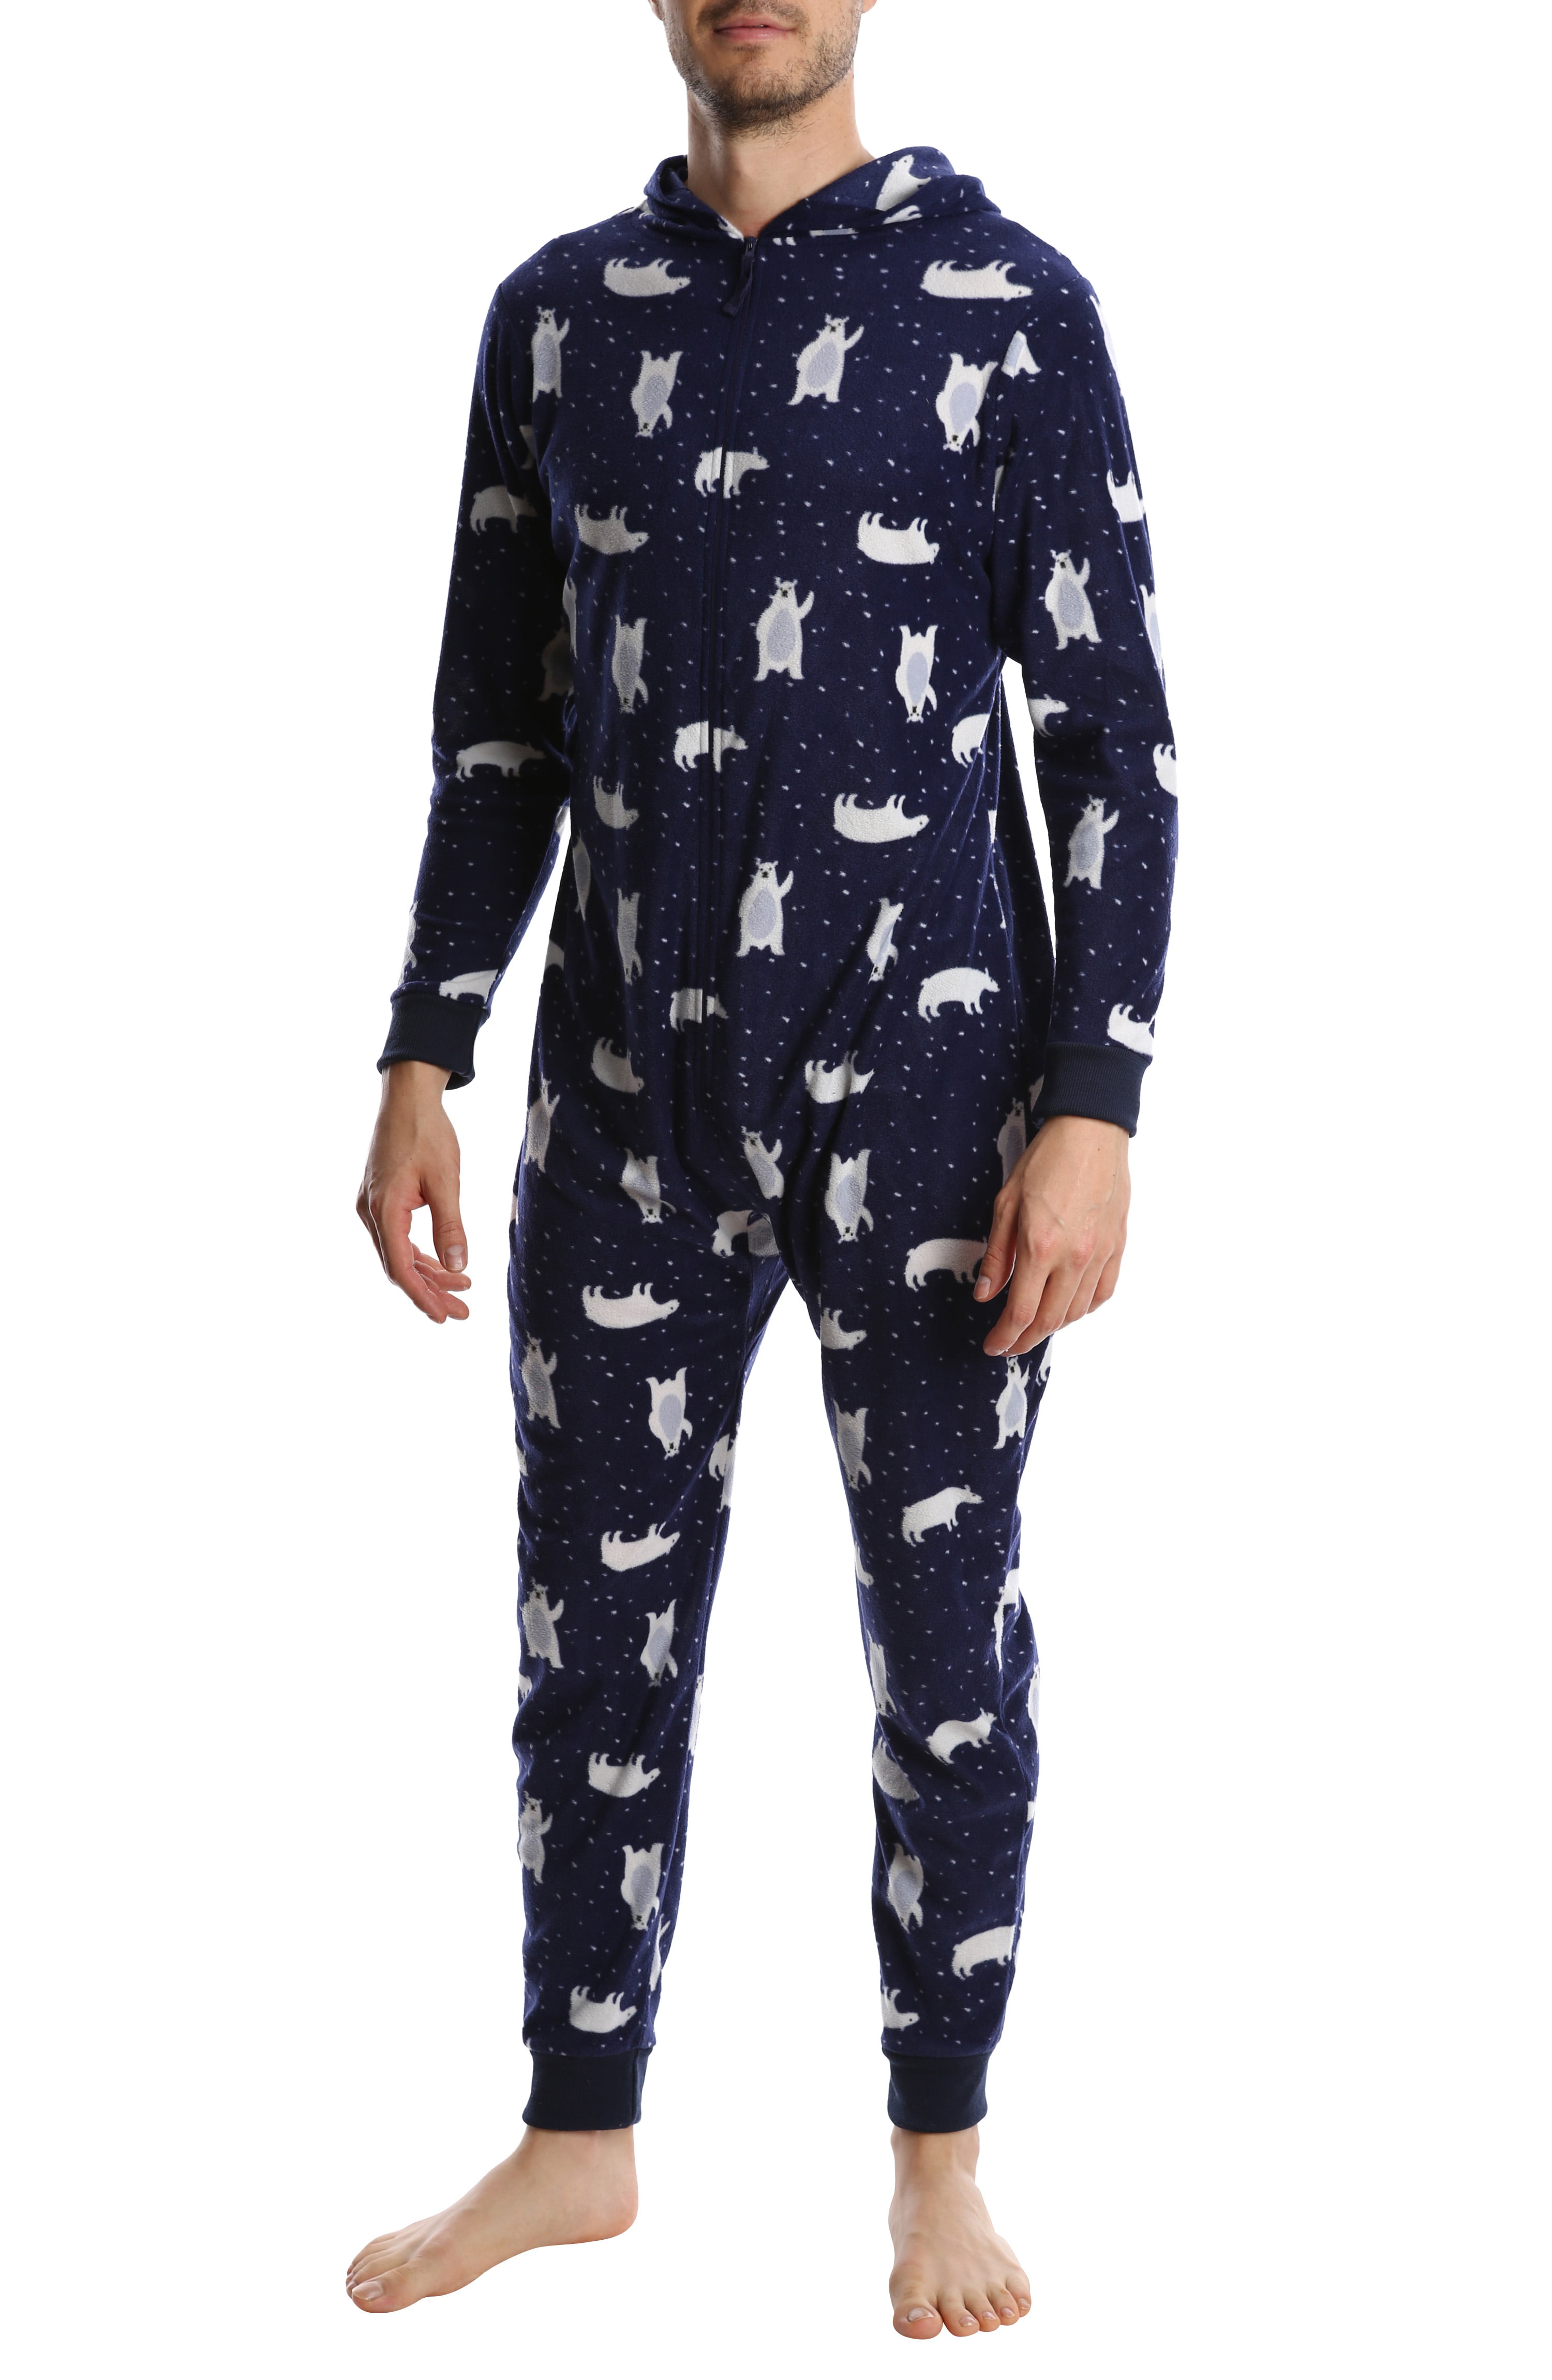 Top Shelf Mens Fleece Onesie Adult One Piece Zip Up Pajamas